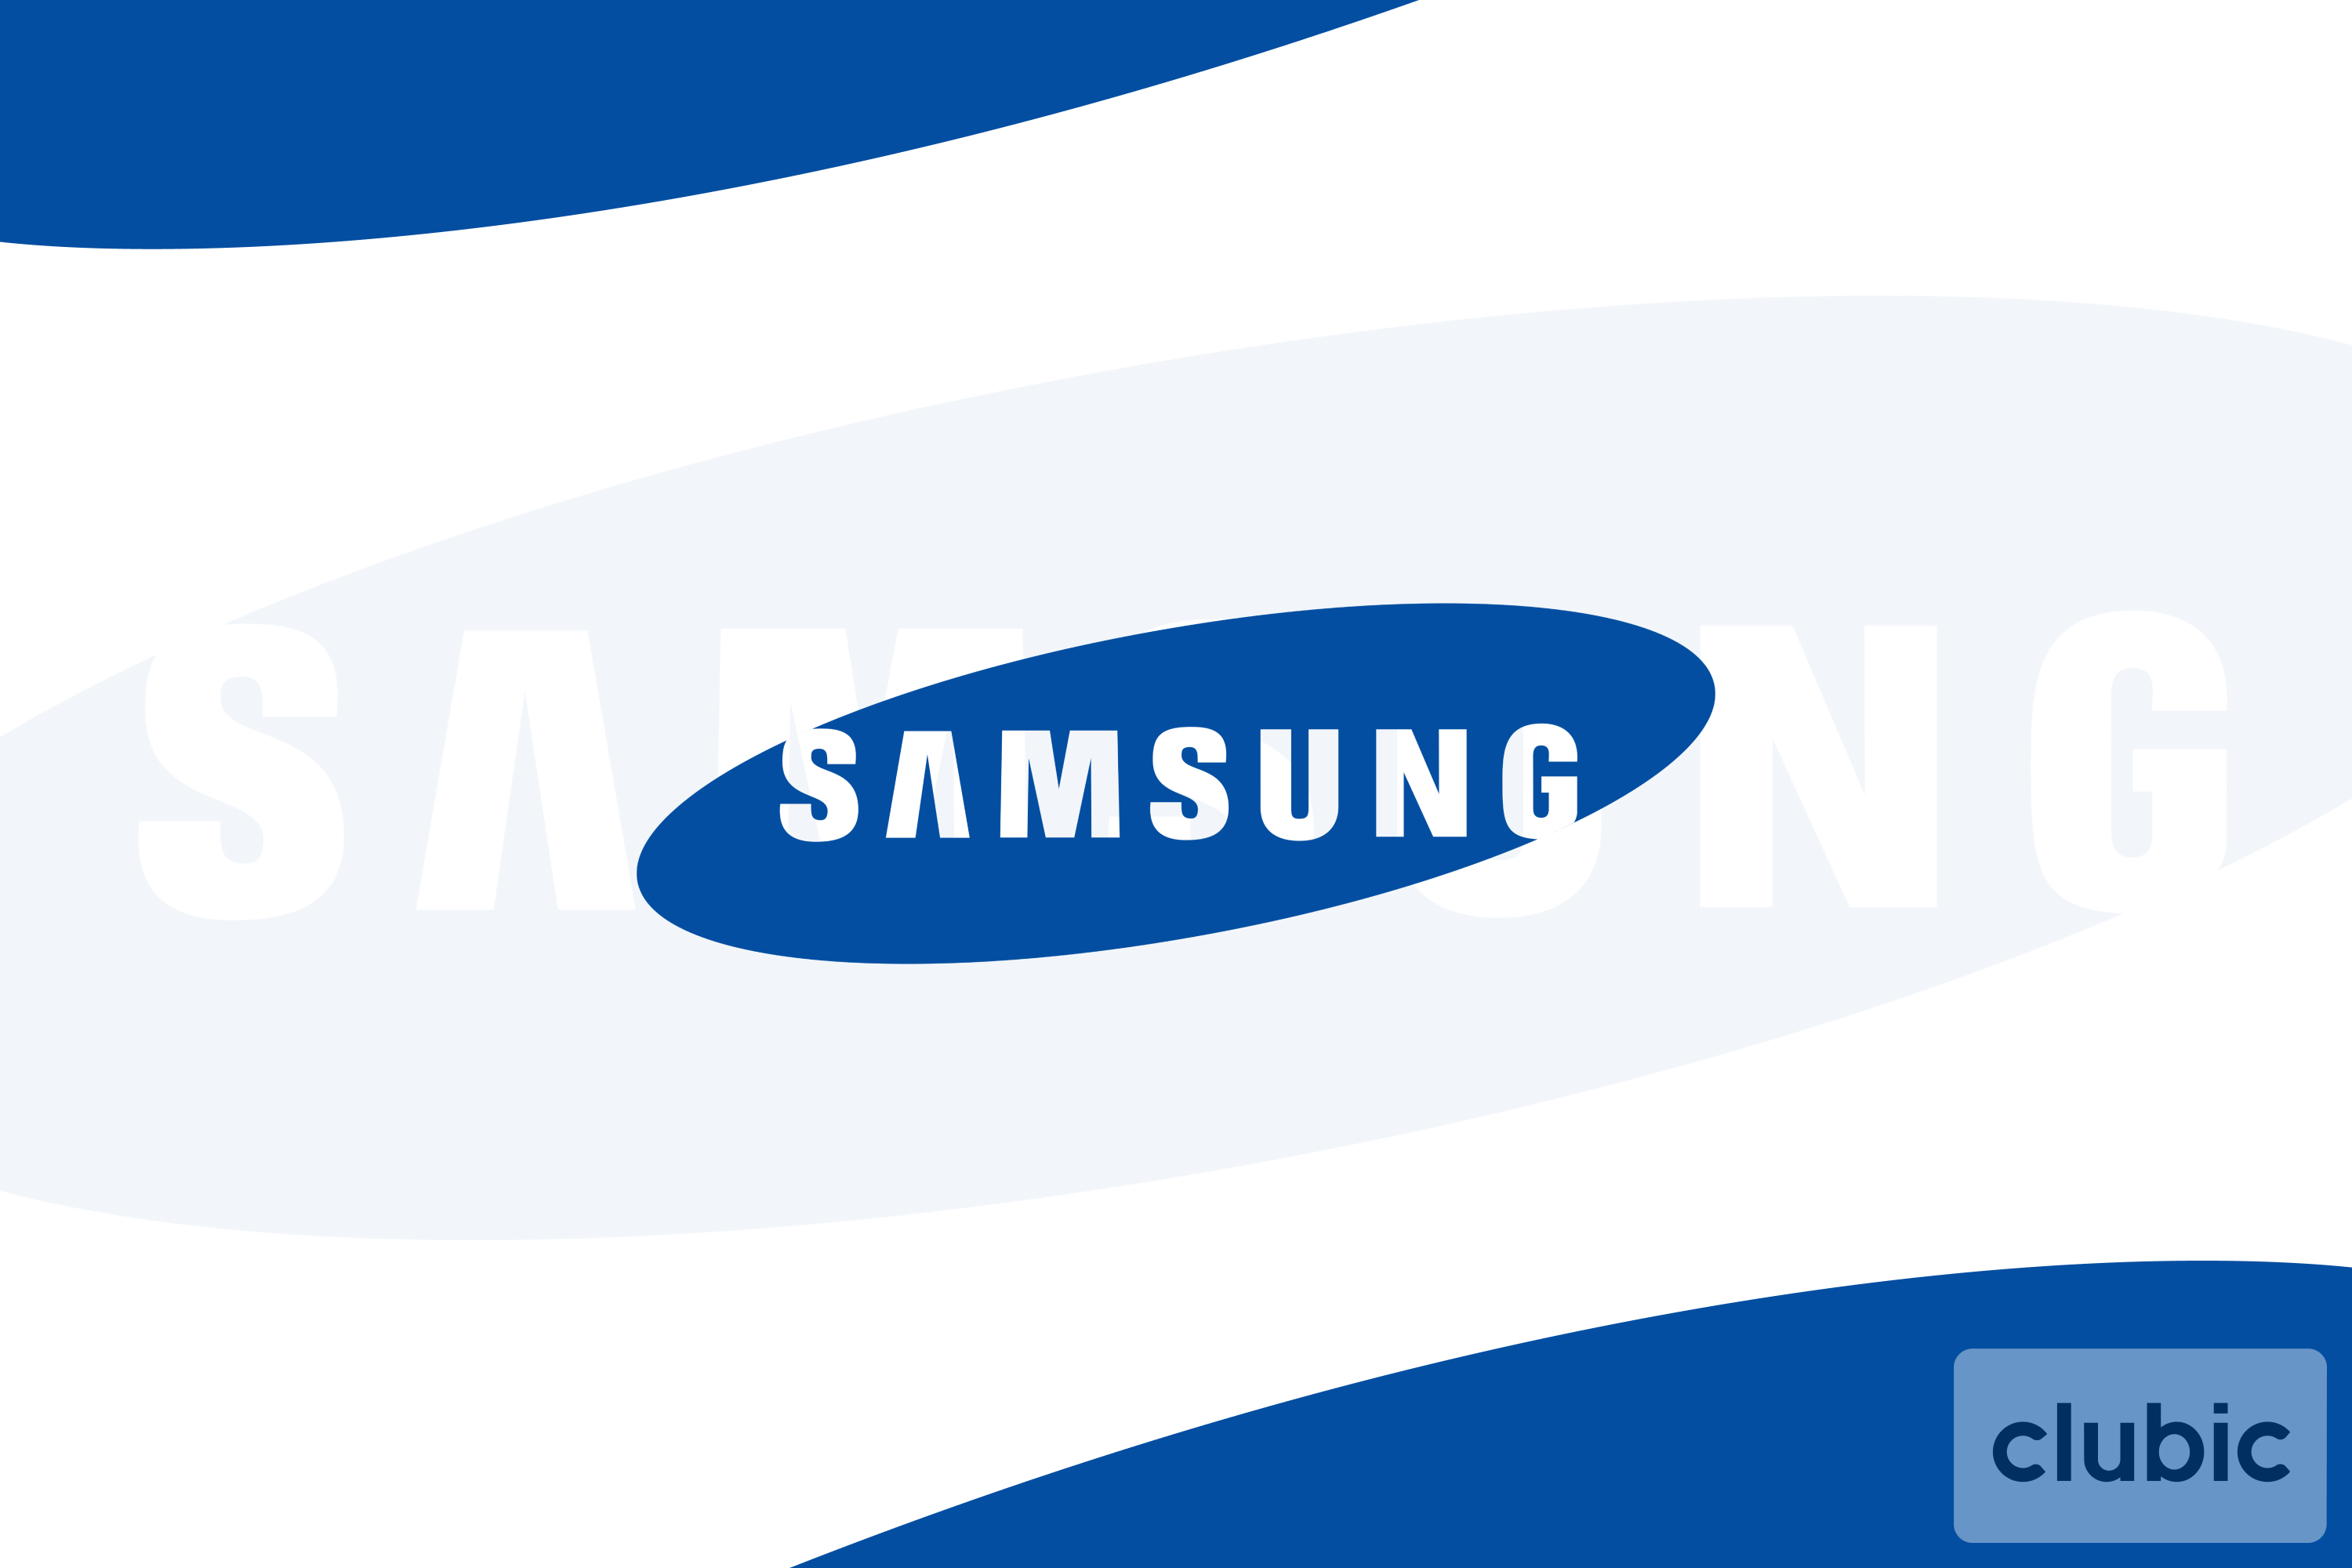 5,23 Gbps : Samsung bat des records en combinant 4G LTE et 5G mmWave sur Galaxy S20+